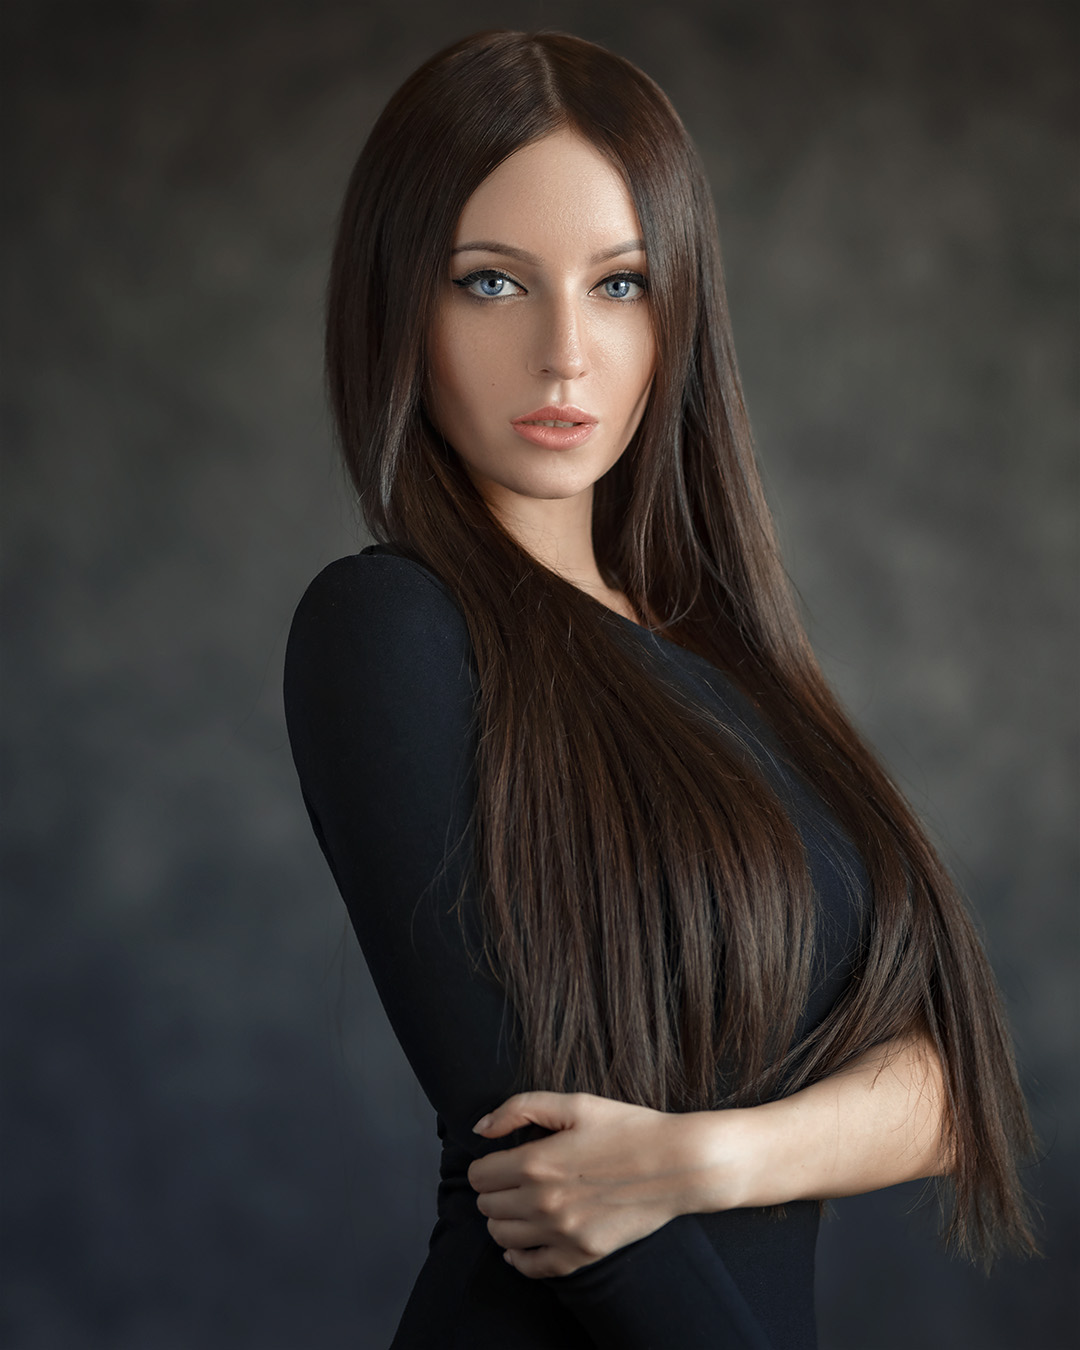 Evgeny Sibiraev Women Brunette Long Hair Makeup Blue Eyes Eyeliner Blouse Black Clothing